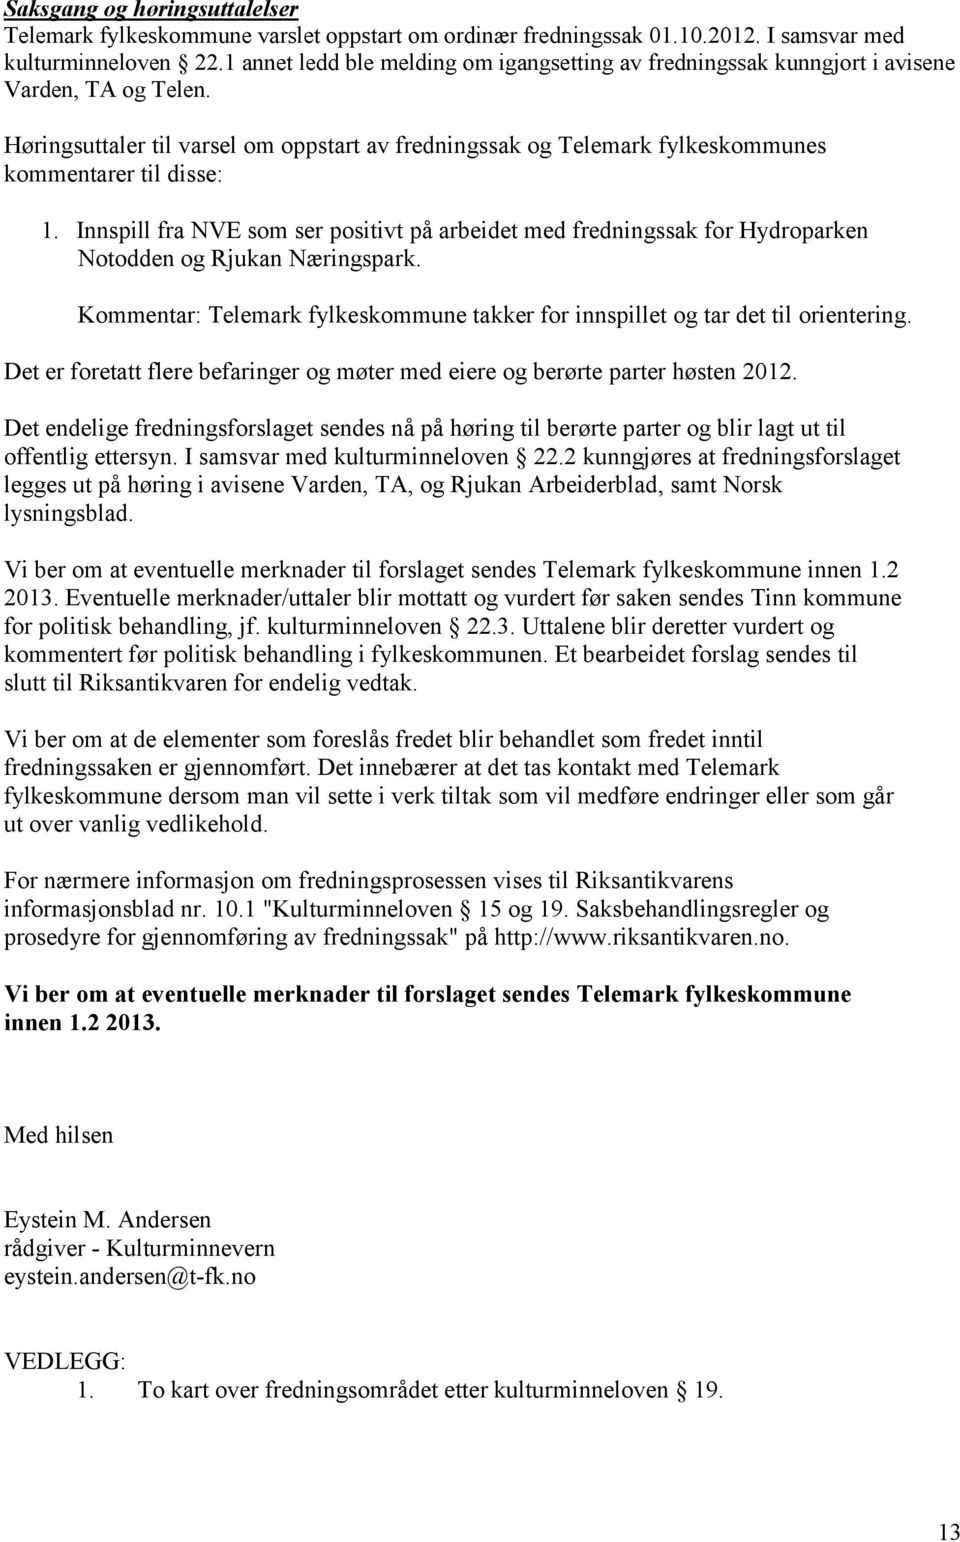 Høringsuttaler til varsel om oppstart av fredningssak og Telemark fylkeskommunes kommentarer til disse: 1.